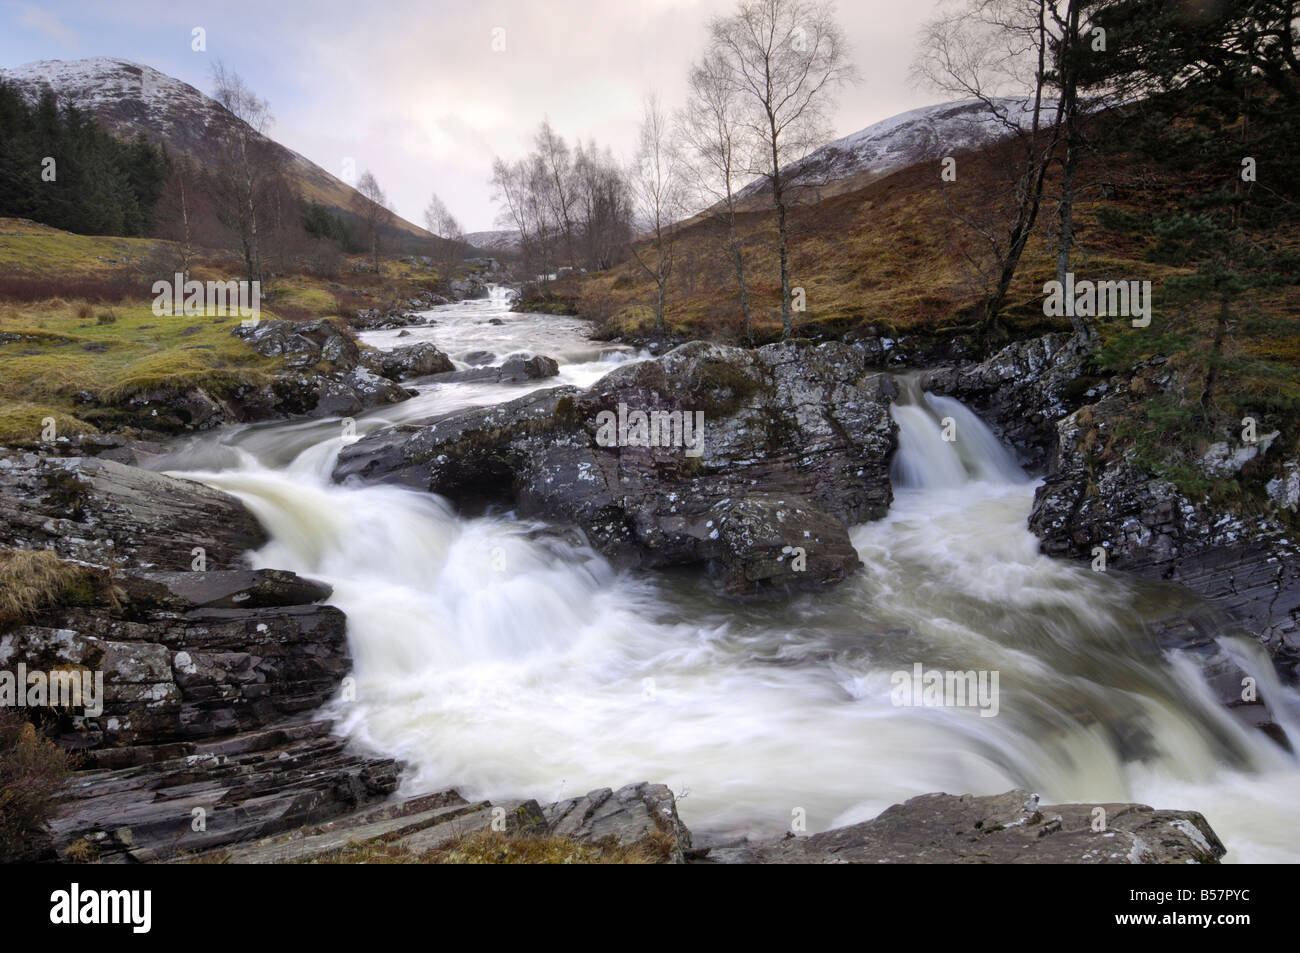 Highland river vicino a Glen Lyon, Perth and Kinross, Scotland, Regno Unito, Europa Foto Stock